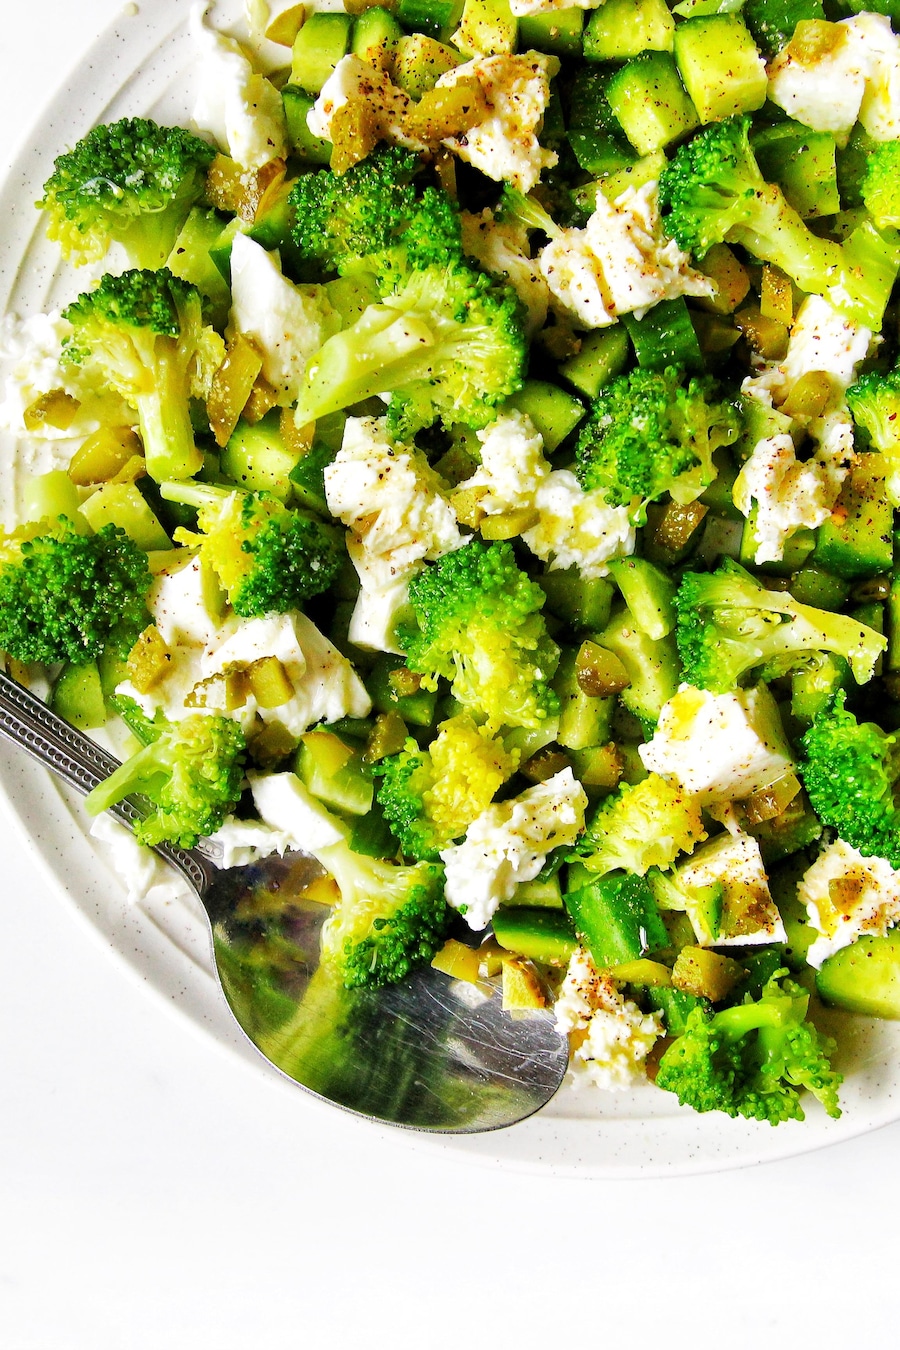 Une salade de brocoli au fromage mozzarella dans une assiette.